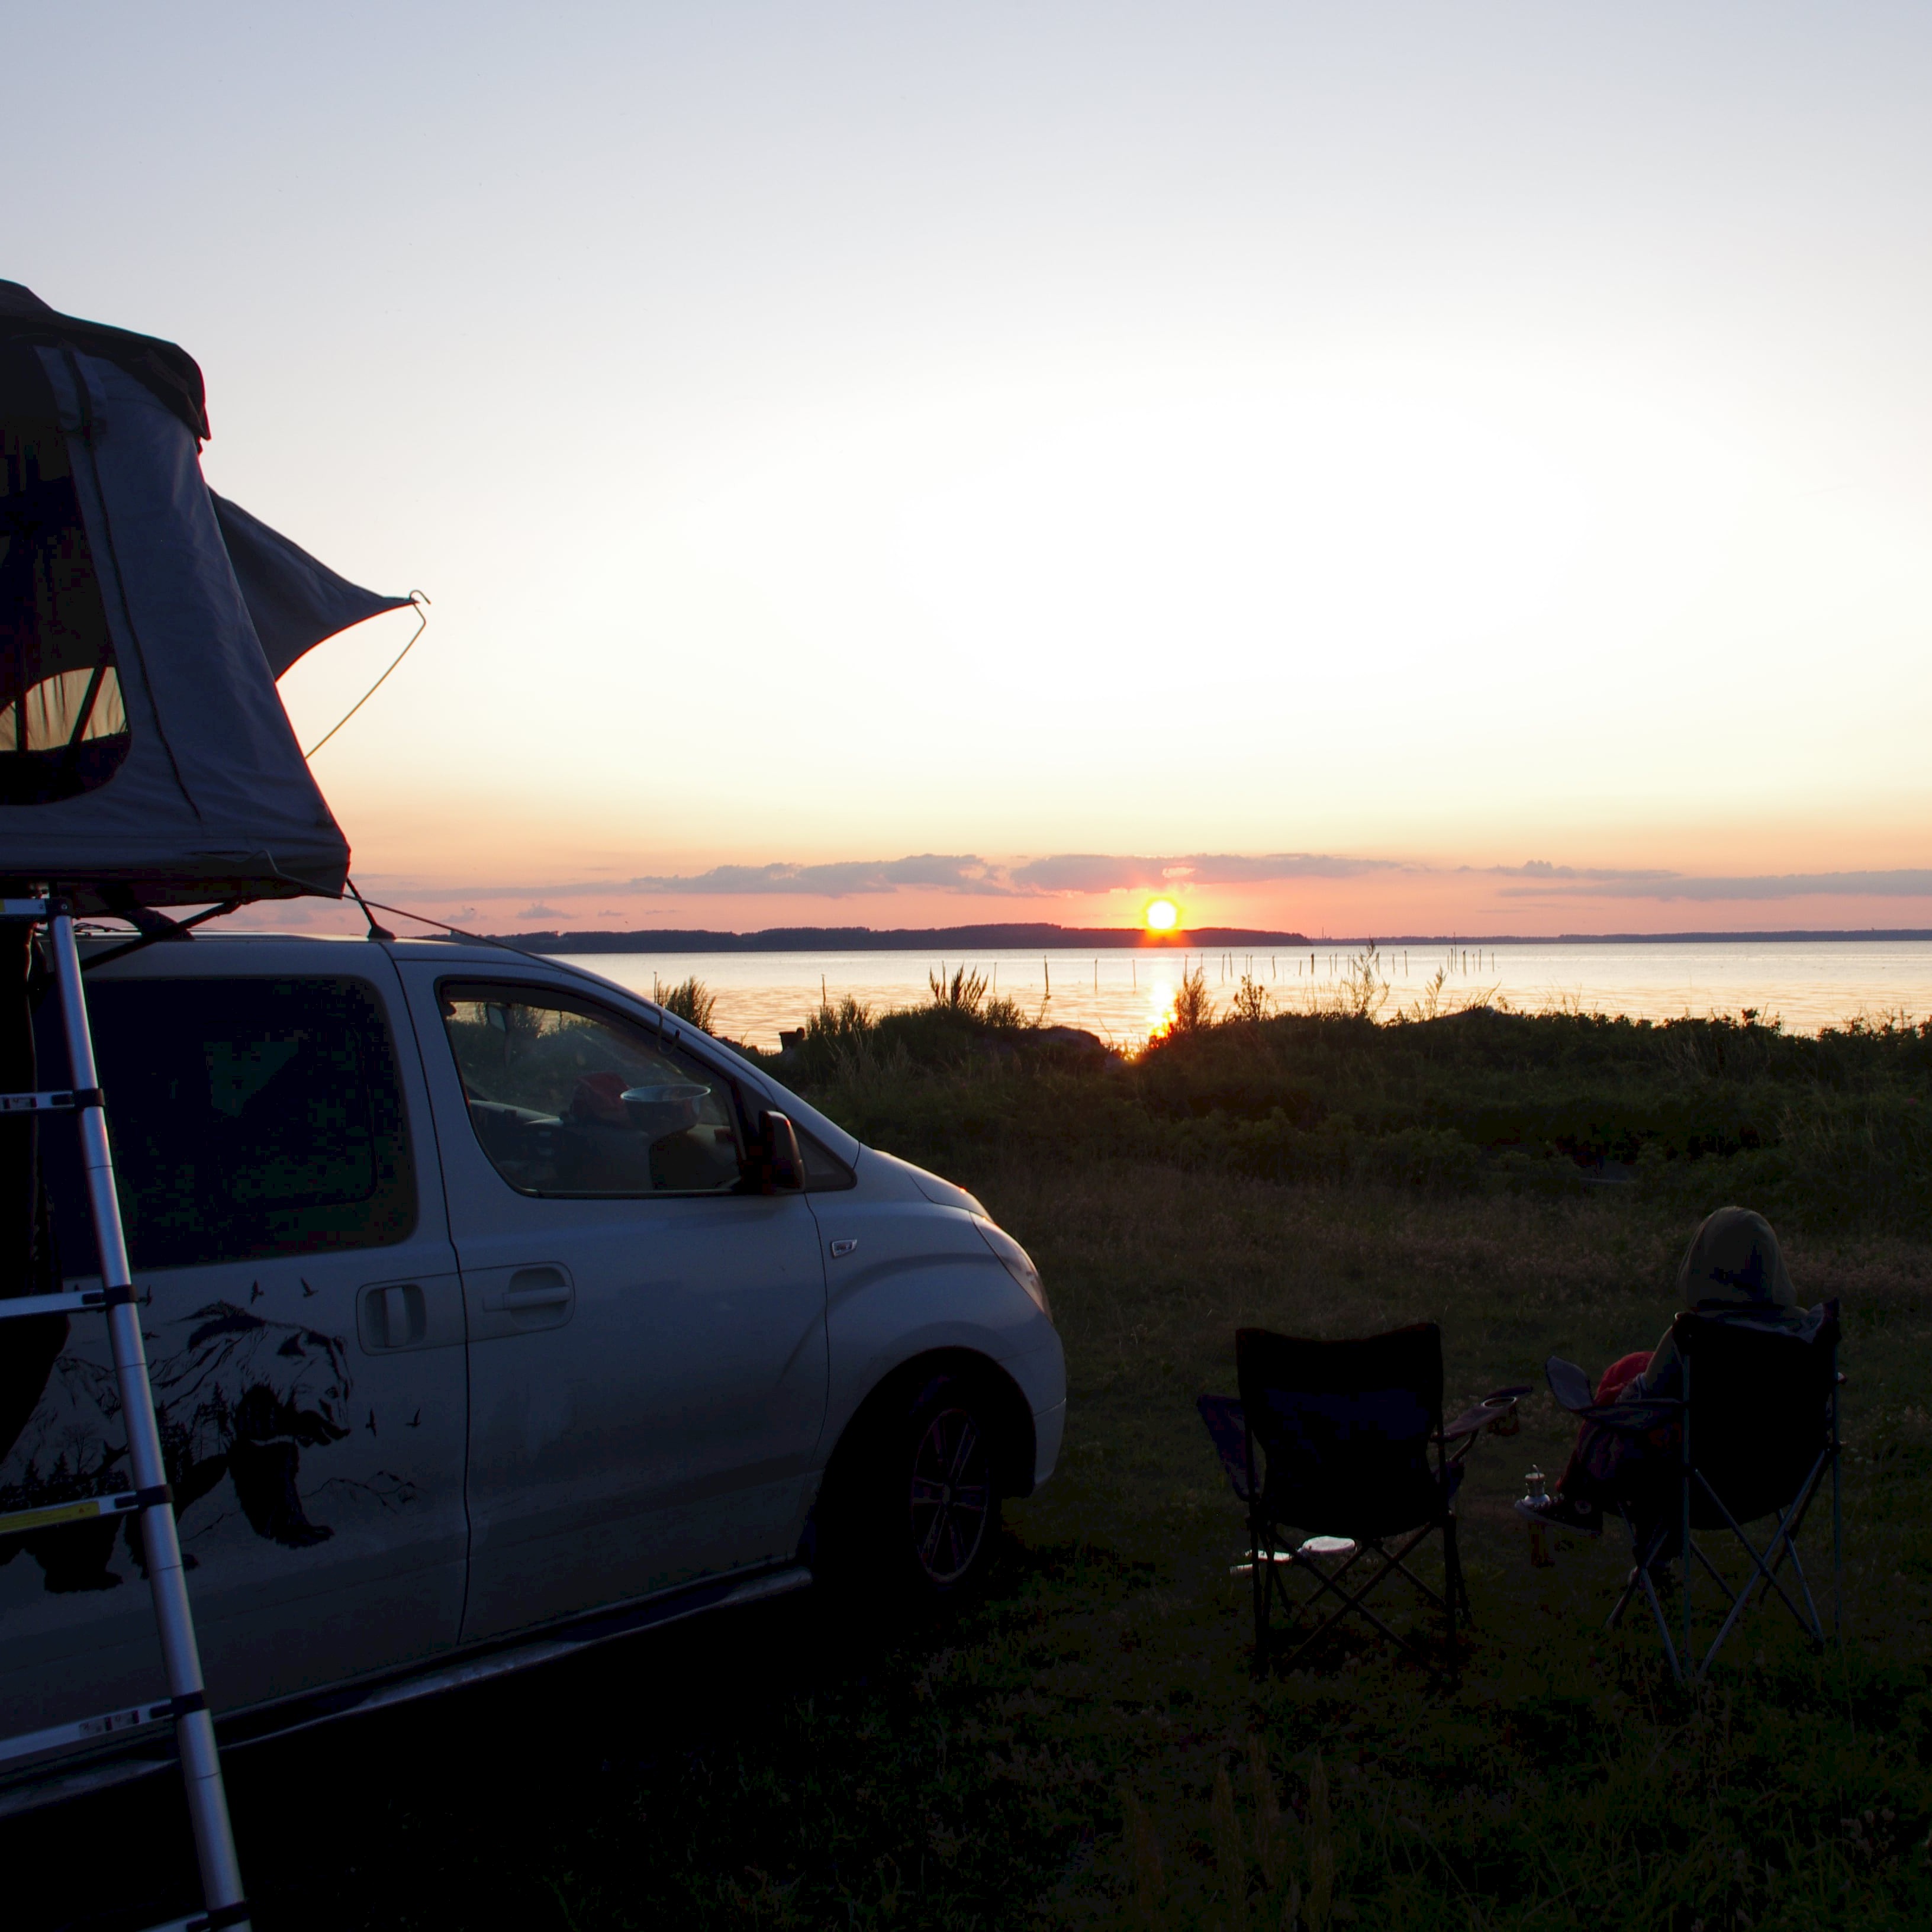 Wild kamperen bij zonsondergang